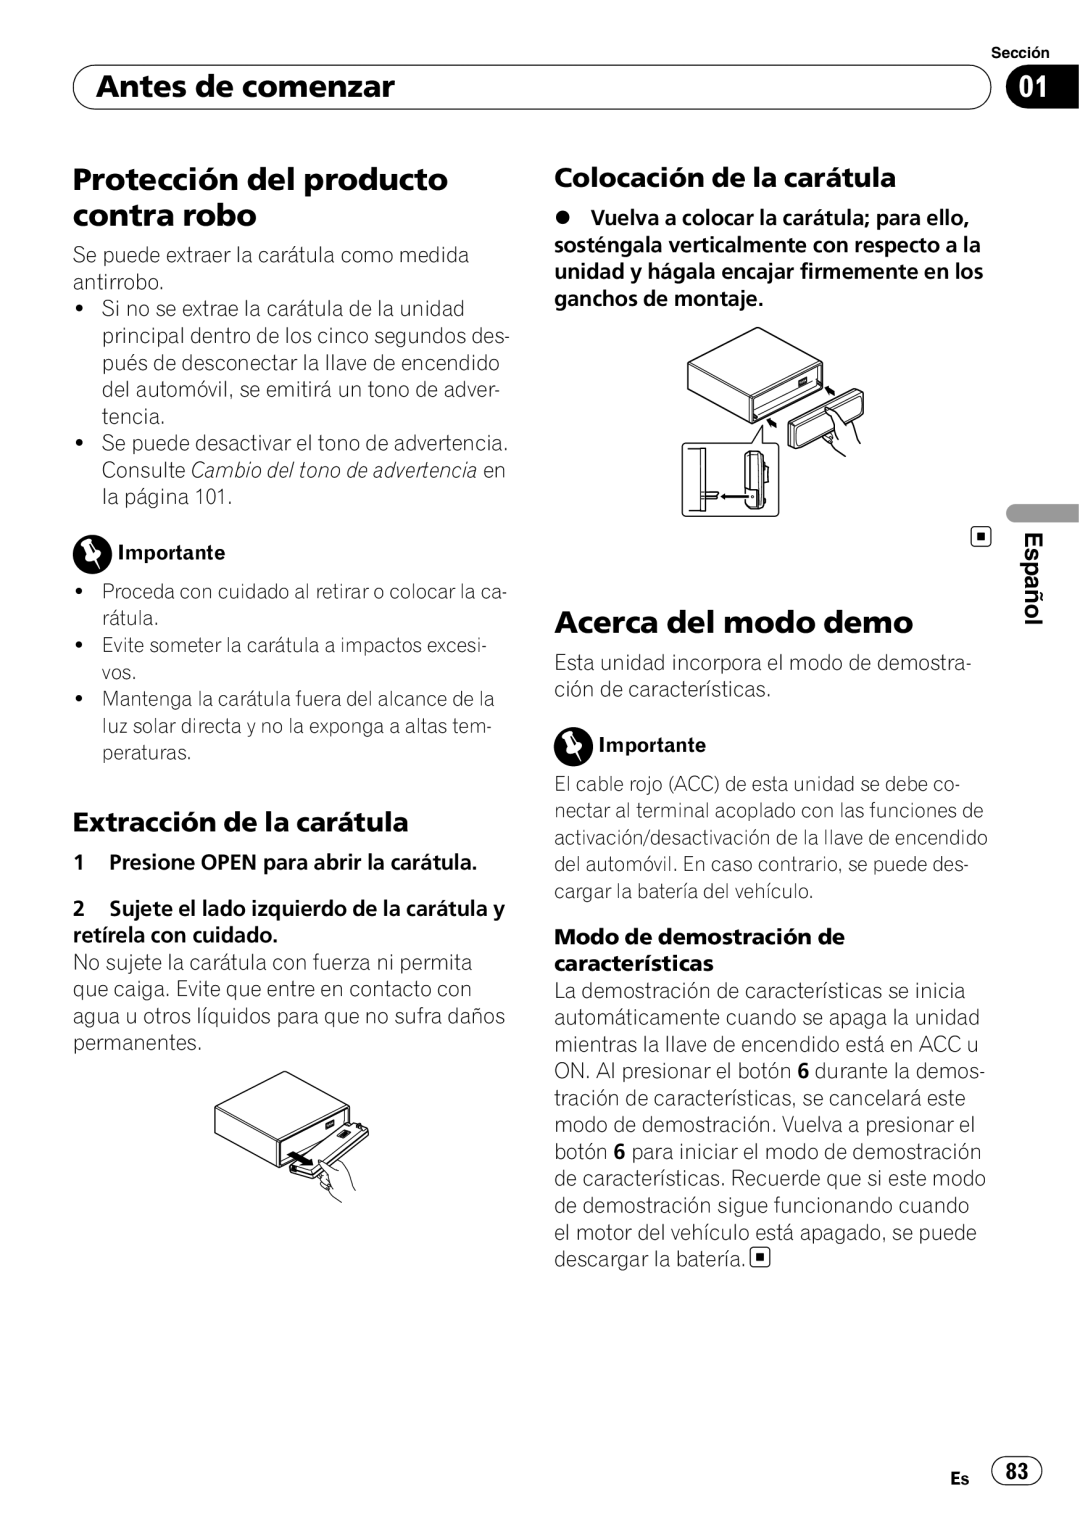 Pioneer SRC7127-B/N Protección del producto contra robo, Acerca del modo demo, Extracción de la carátula, Español 